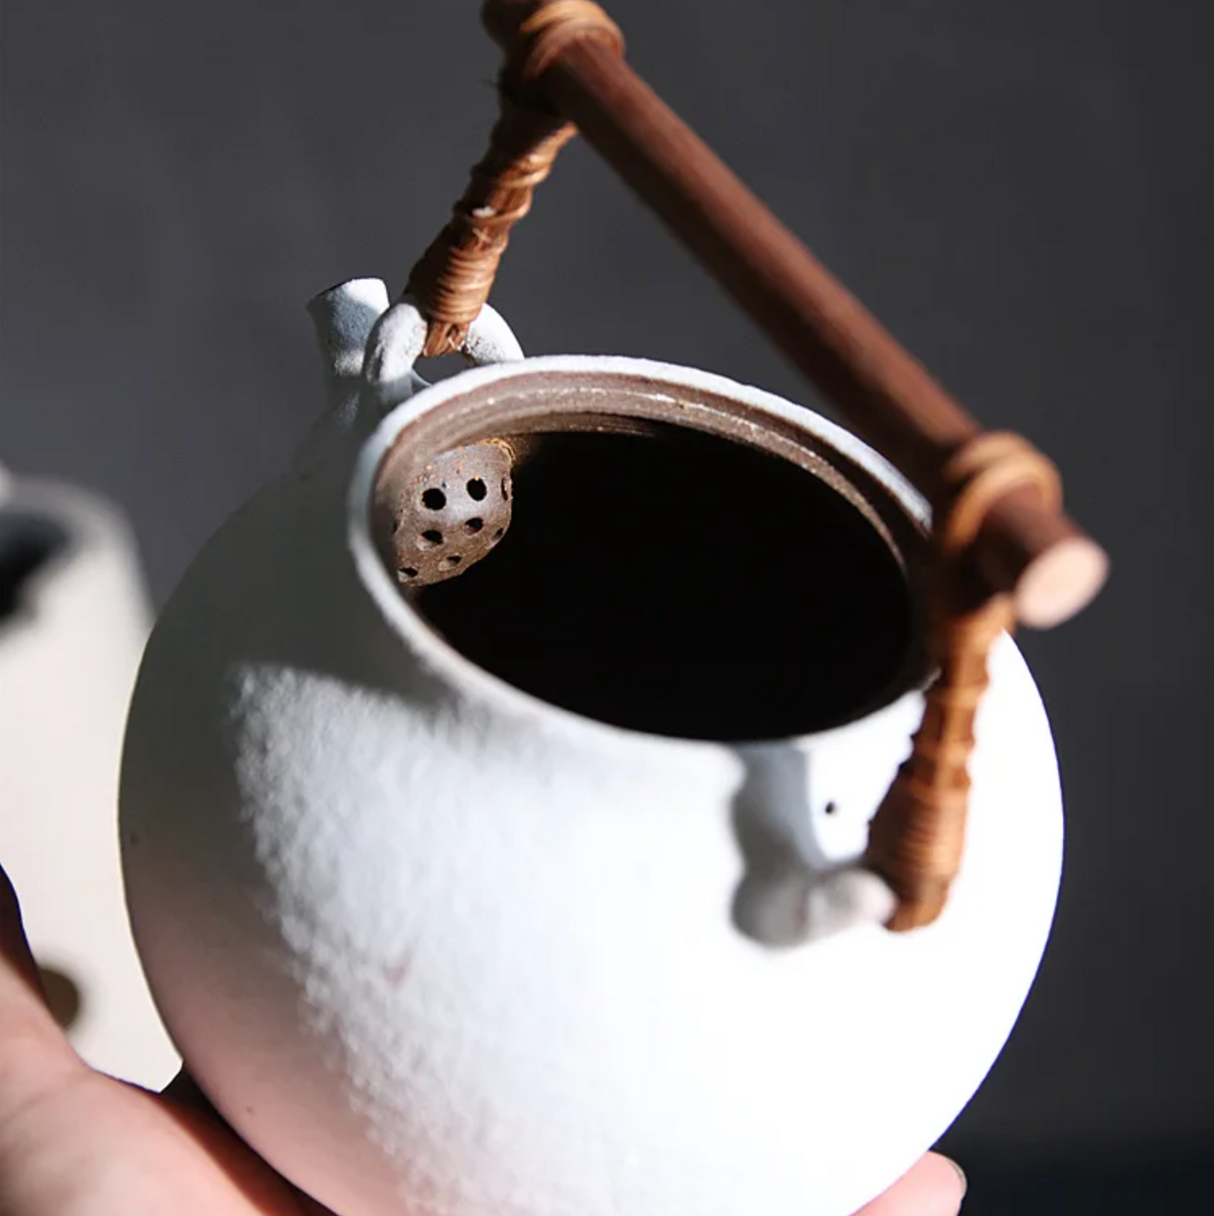 Handmade white Japanese teapot